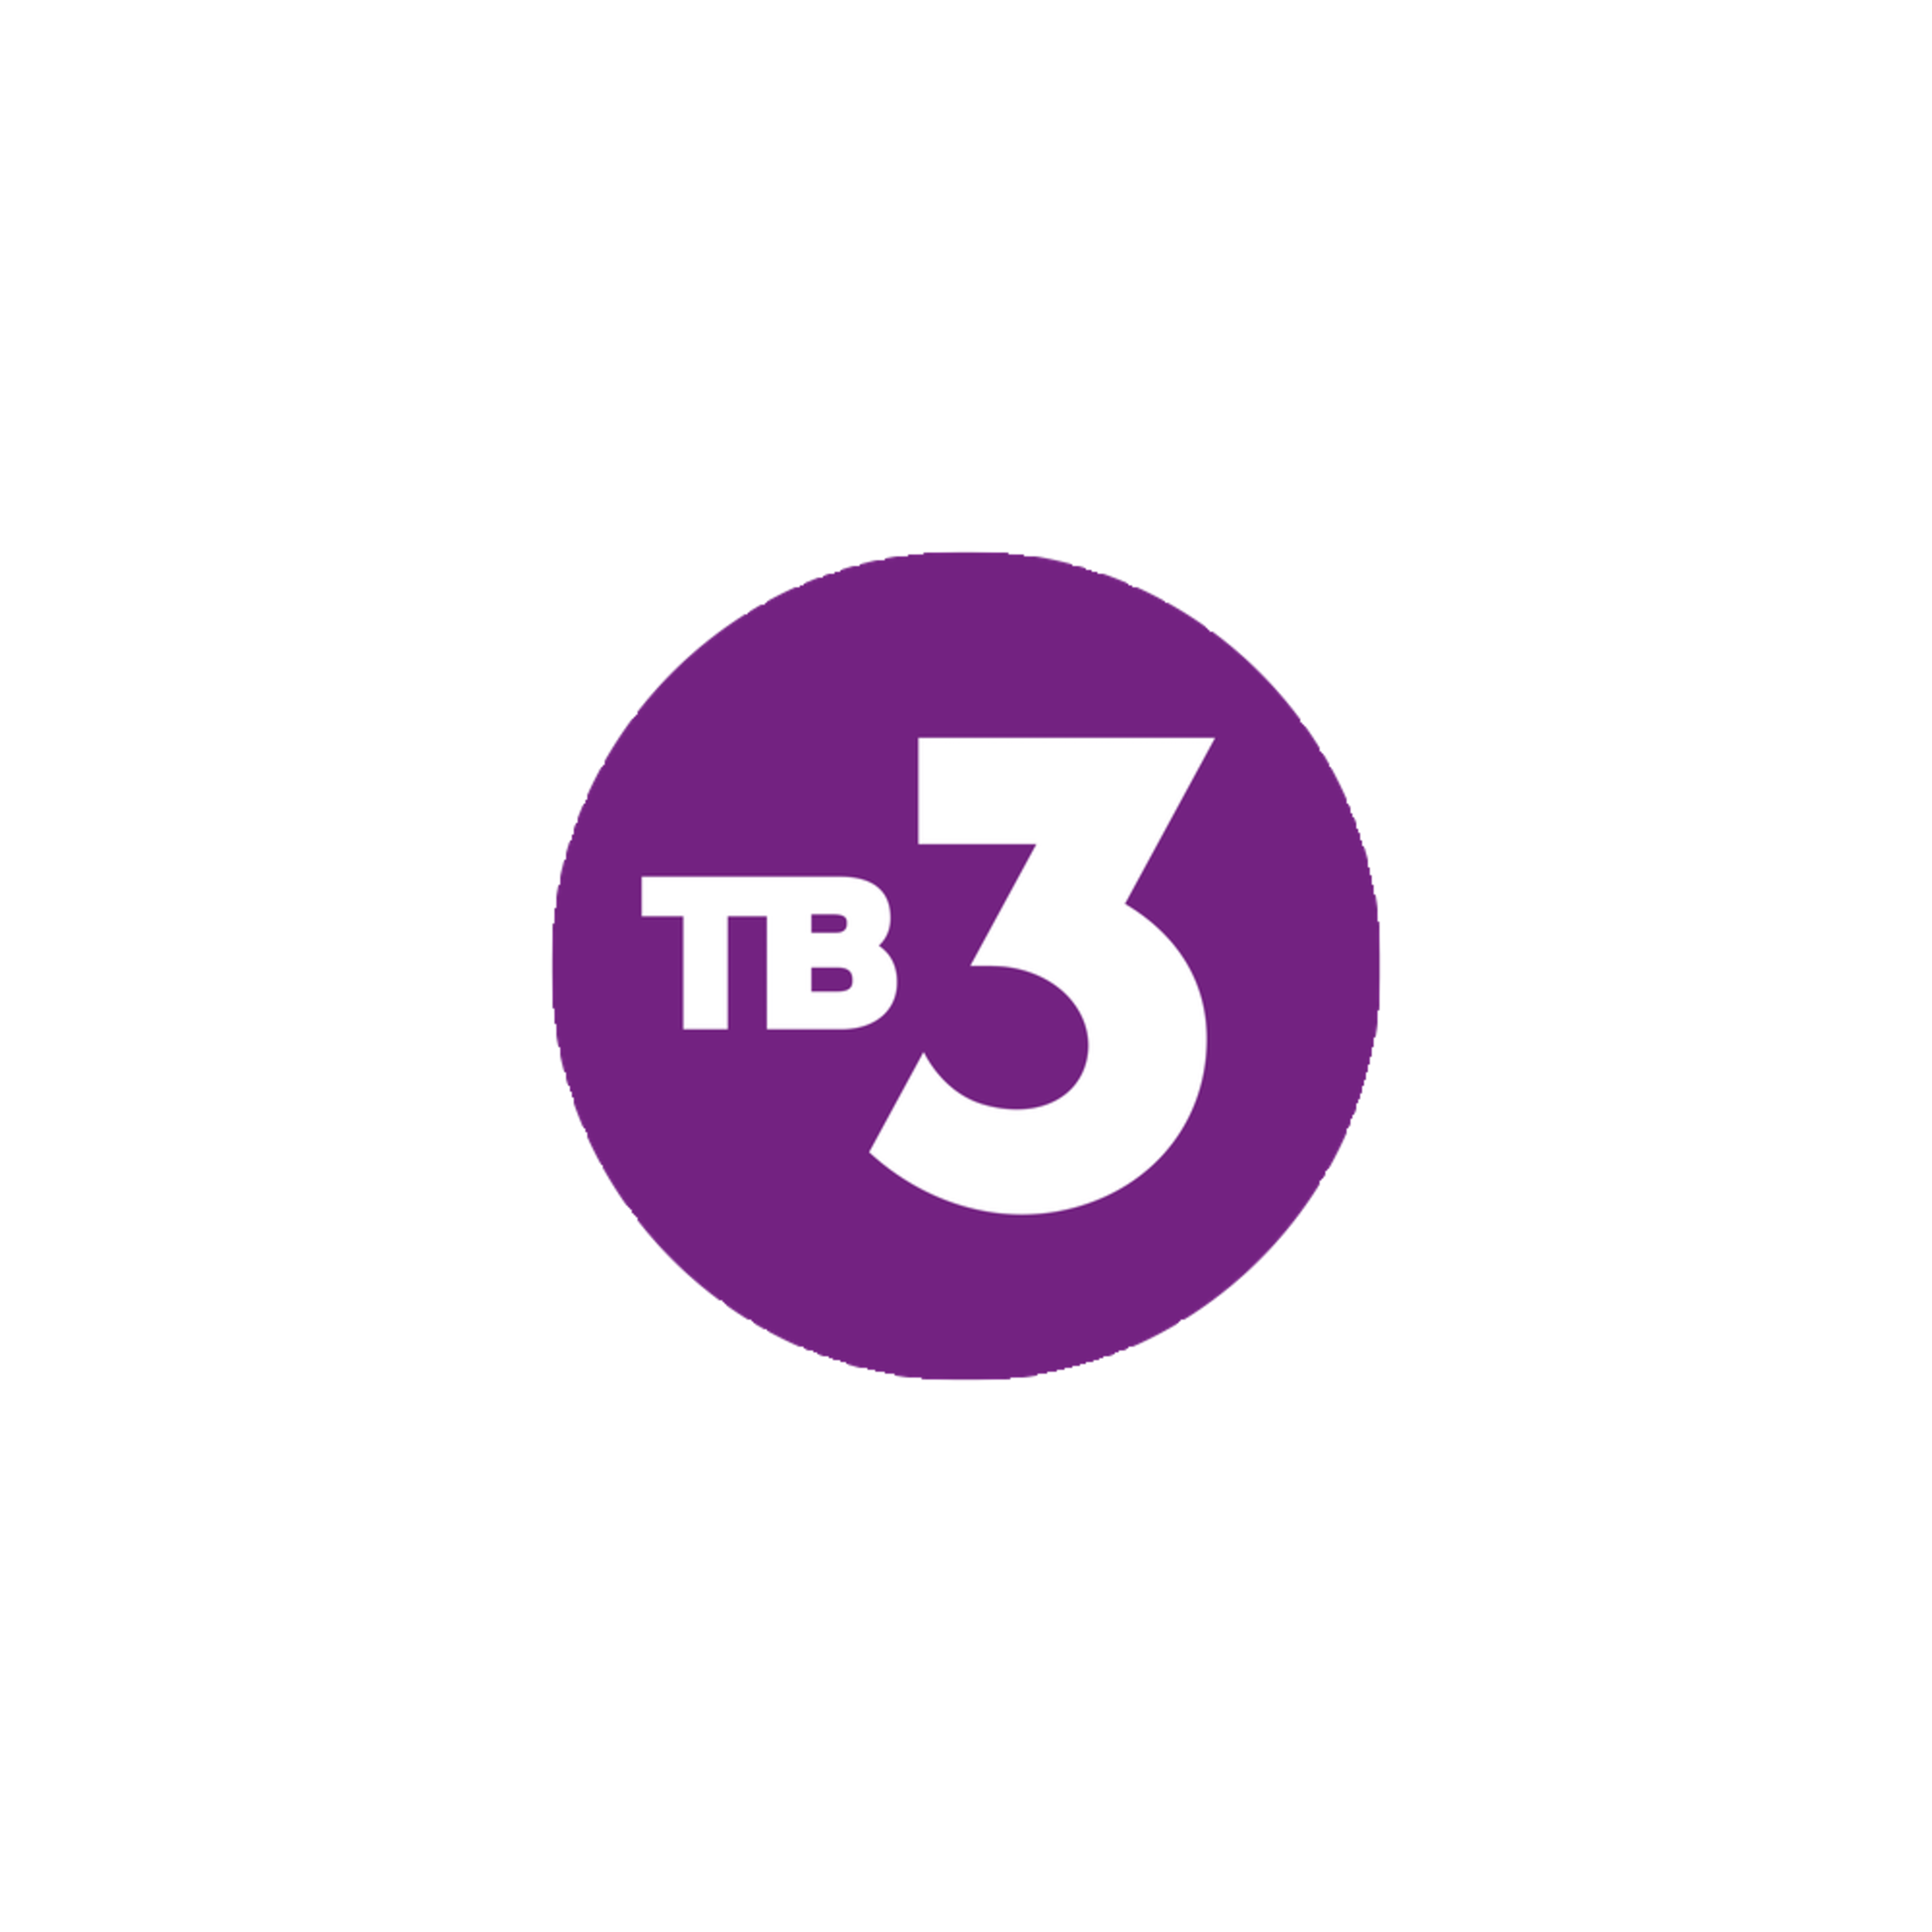 Канал тв3 на неделю. Тв3 логотип. Телеканал тв3. 3 Канал. Логотип канала тв3.